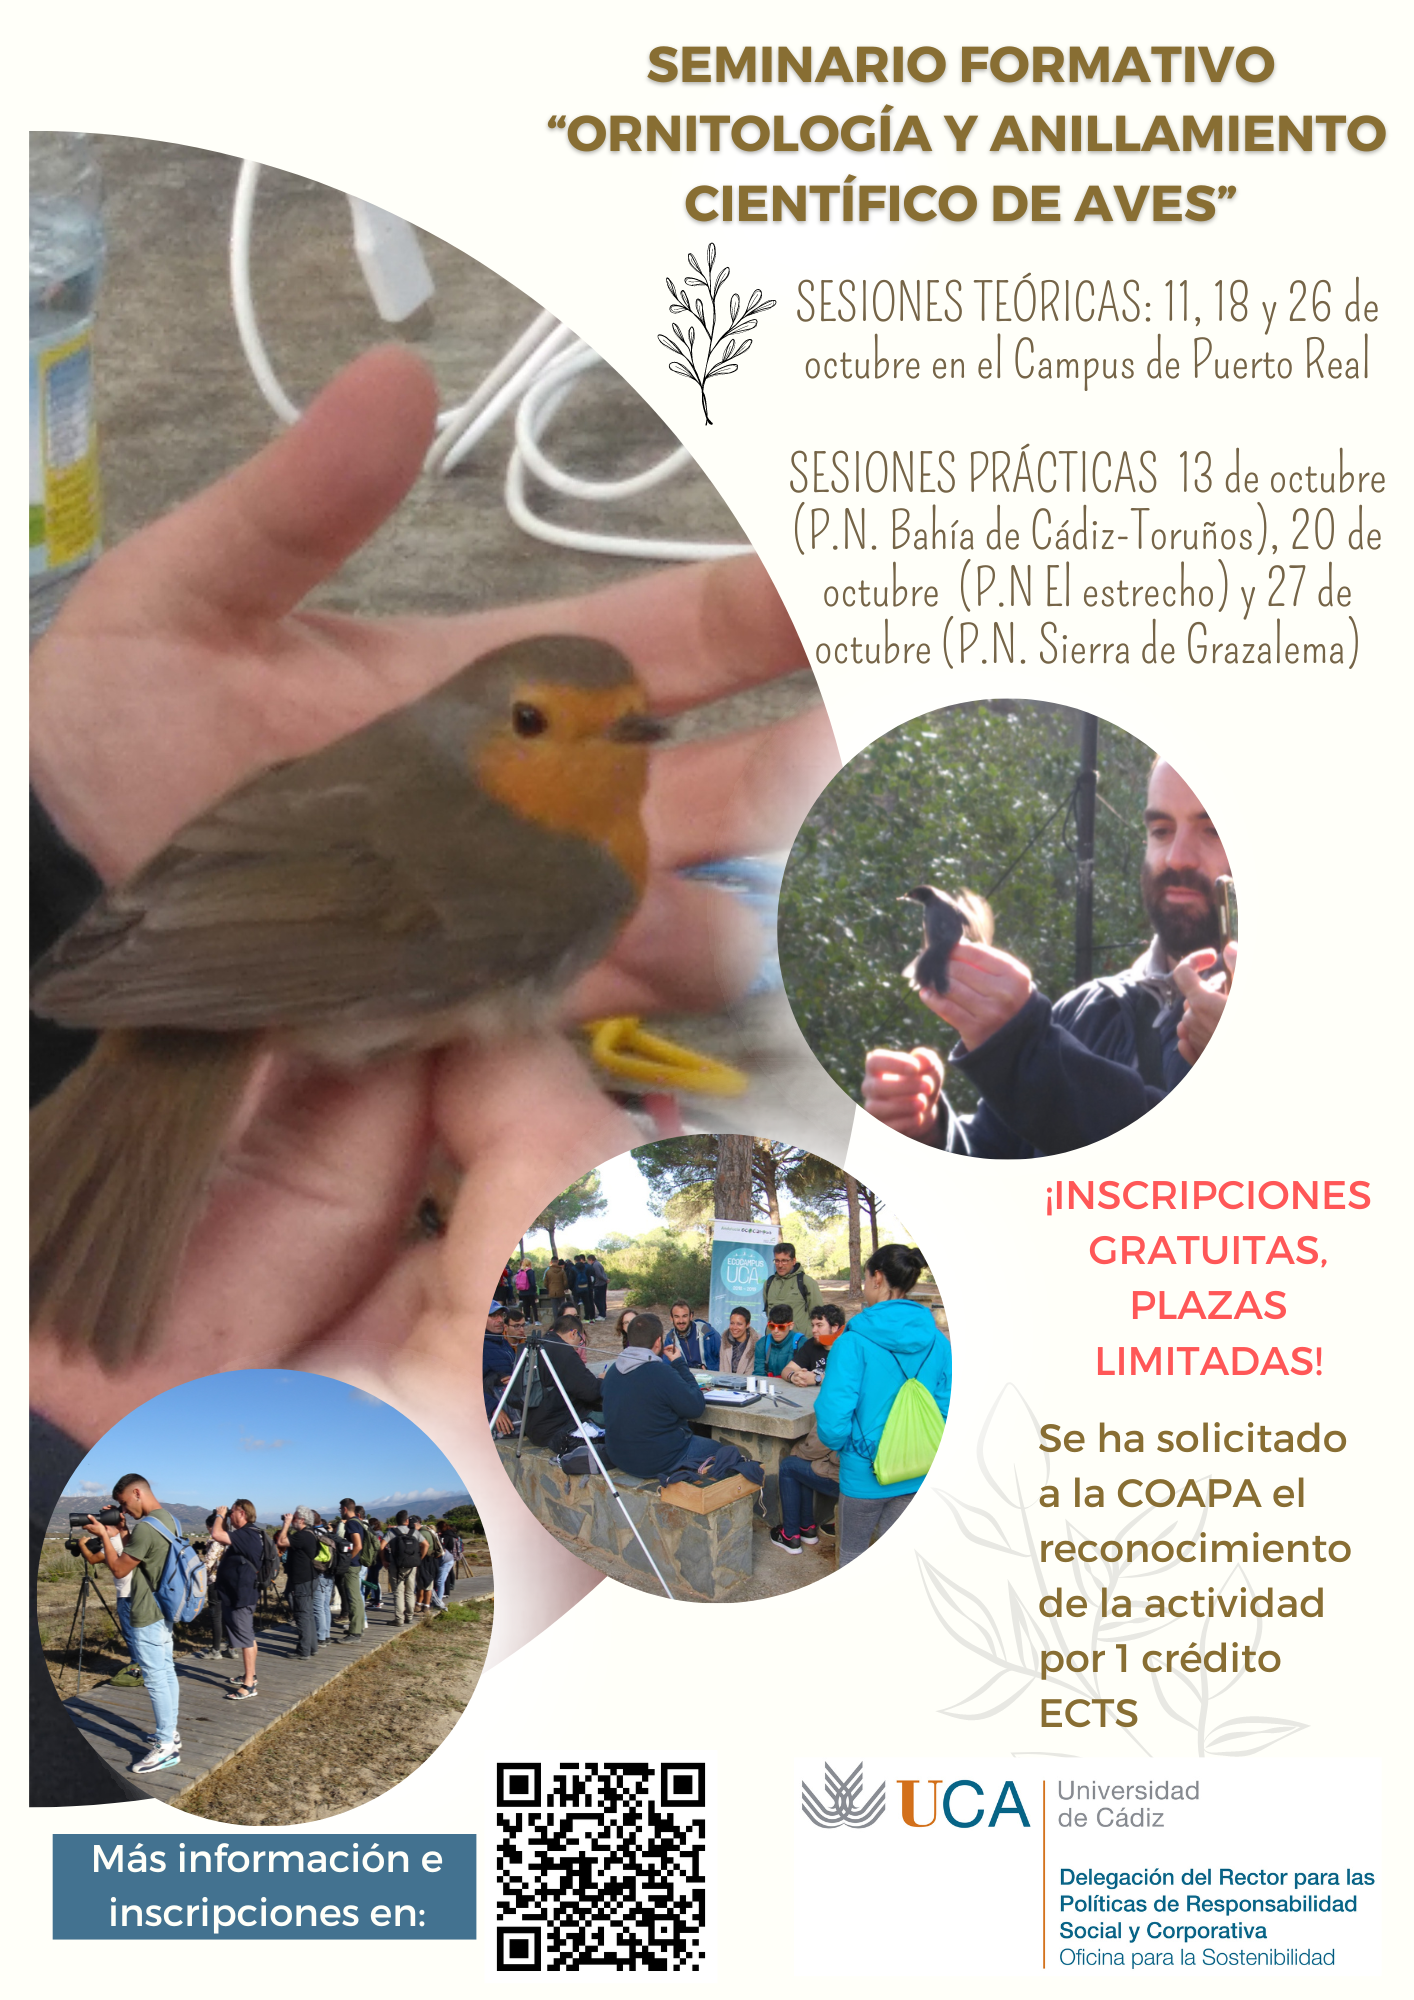 Se abre el periodo de inscripción para el Seminario de Ornitología y Anillamiento Científico de Aves en la UCA